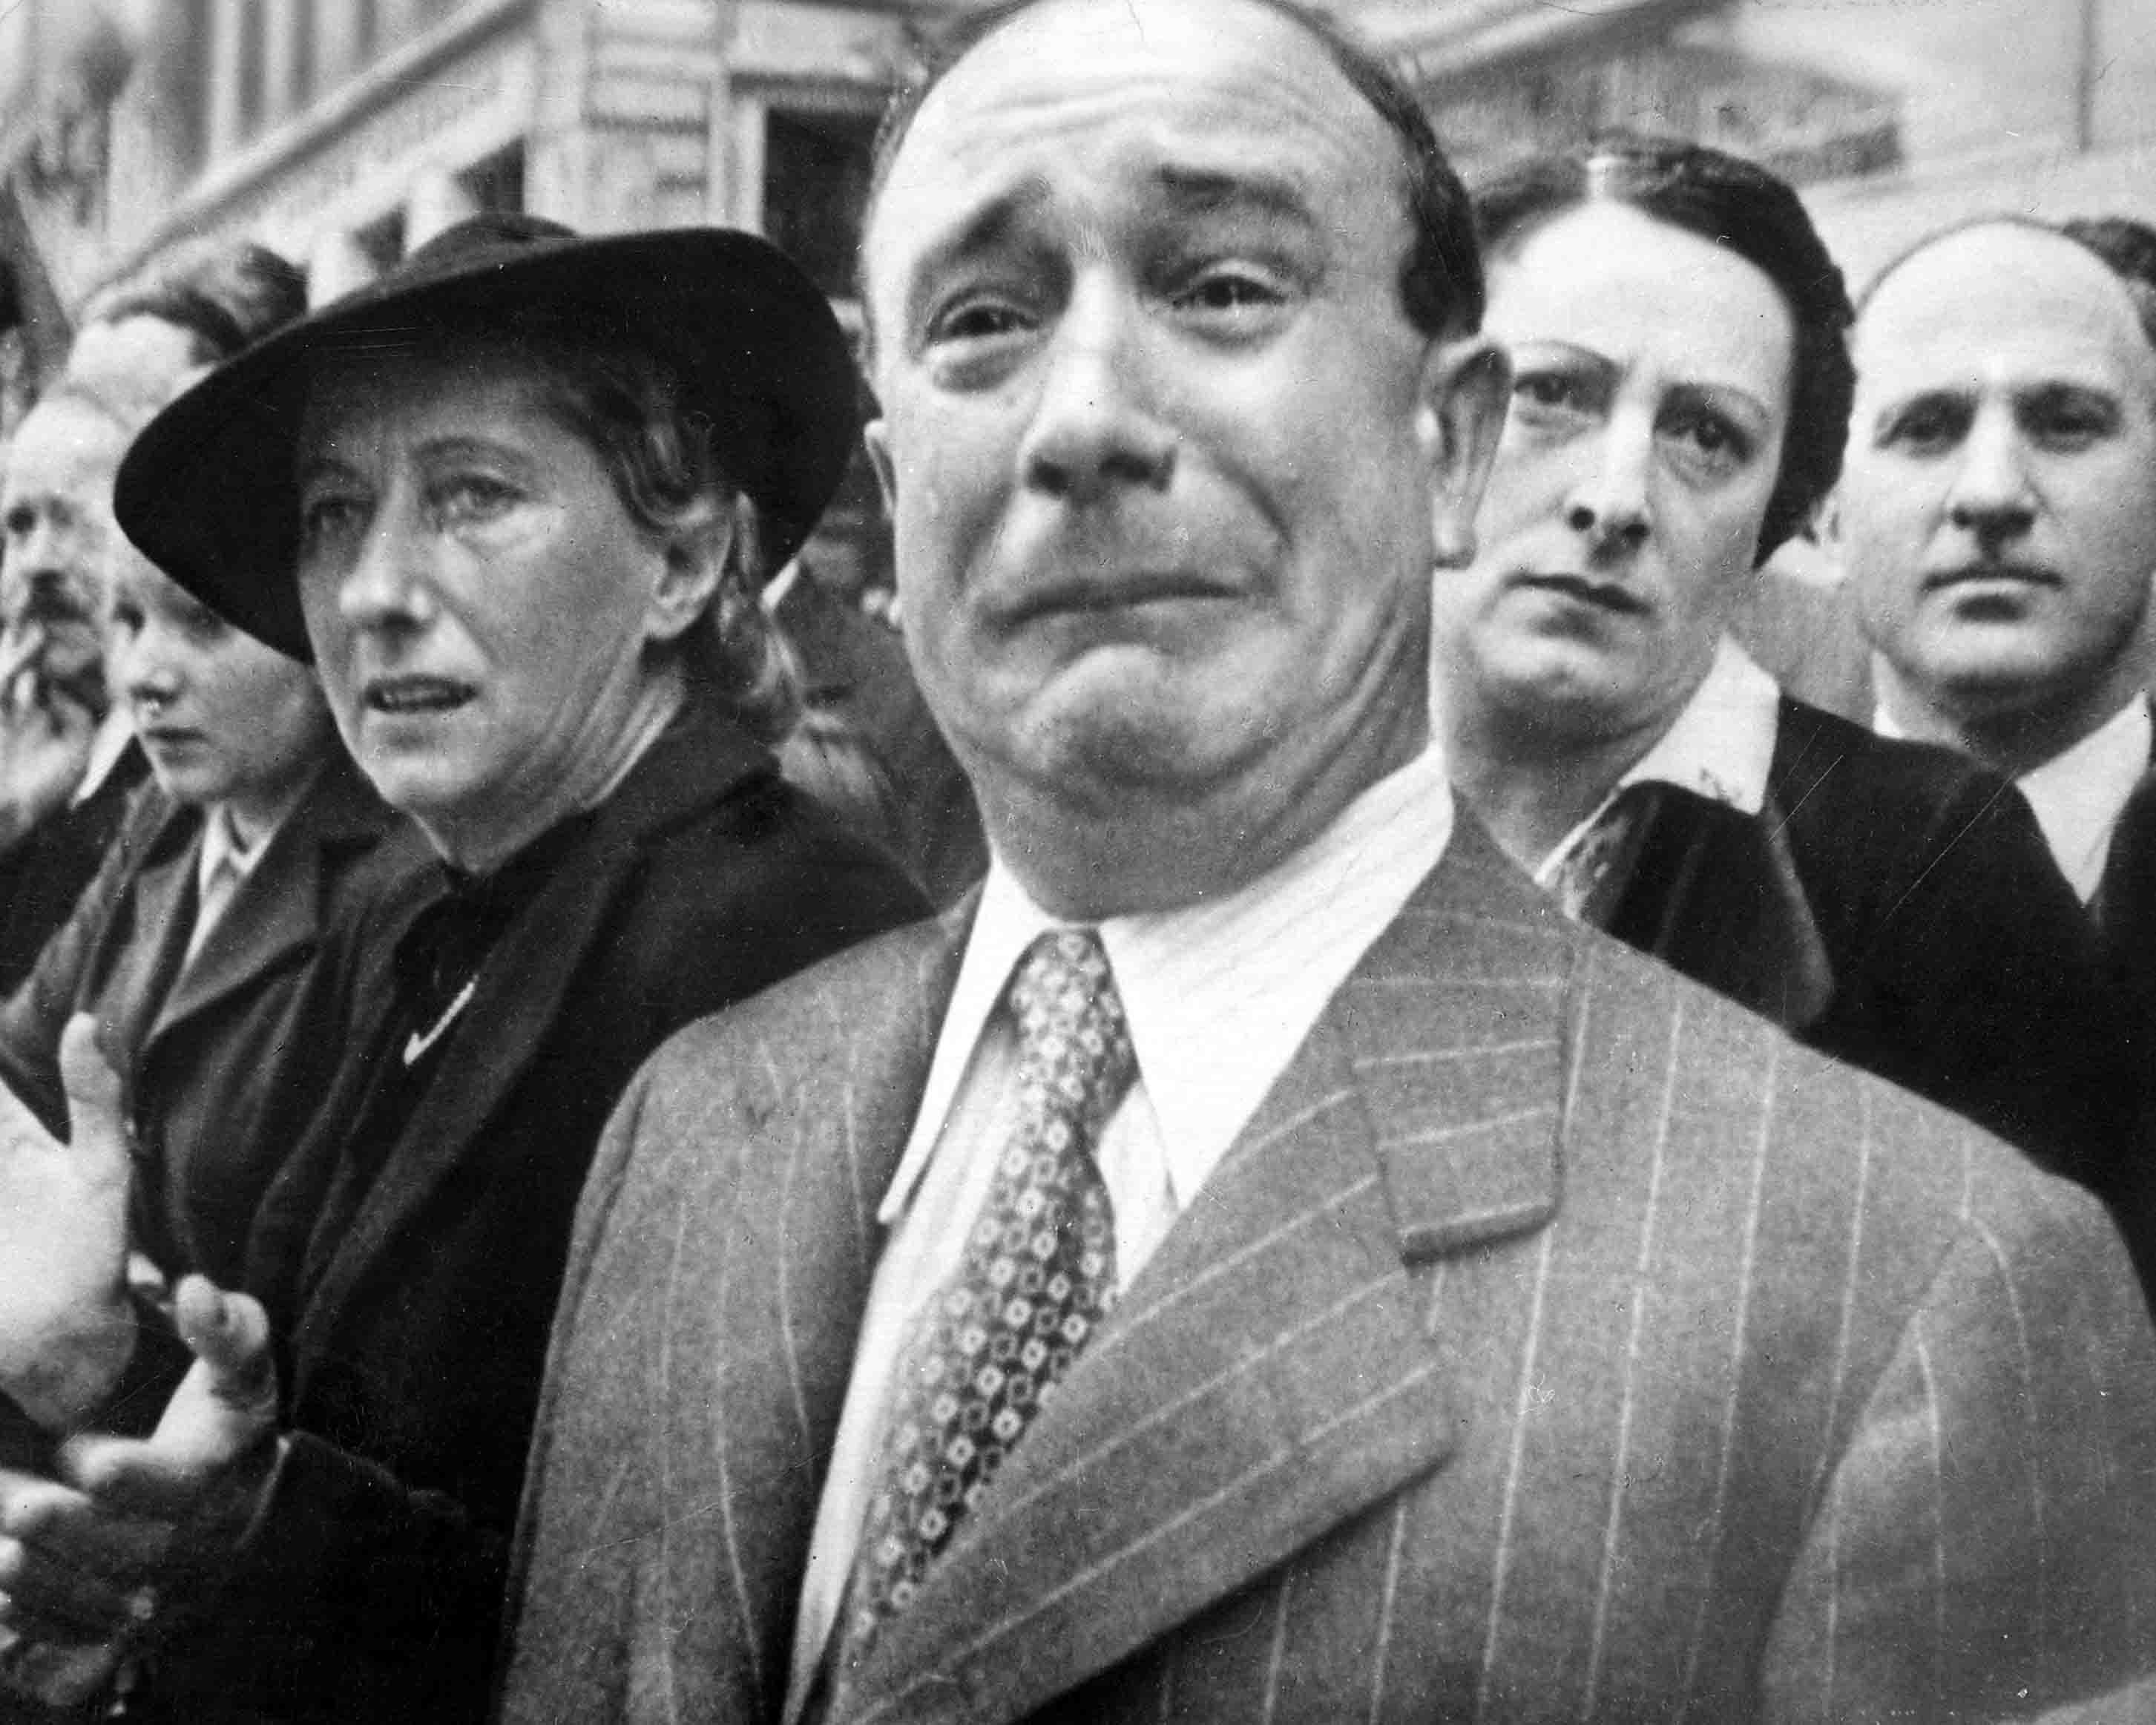 Feltehetően George Mejat felvétele<br /><br />Az egyik legtöbbet vitatott fénykép. Az általános, legszélesebb körben elfogadott verzió szerint a Barzetti névre hallgató úr 1940. június 14-én sírta el magát az utcán, amikor a megszálló német csapatok bevonultak Párizsba. Ezt sokan vitatták. Bármi is a pontos igazság a fénykép körül, a síró francia férfi szintén az egyik leghíresebb háborúellenes kép lett.